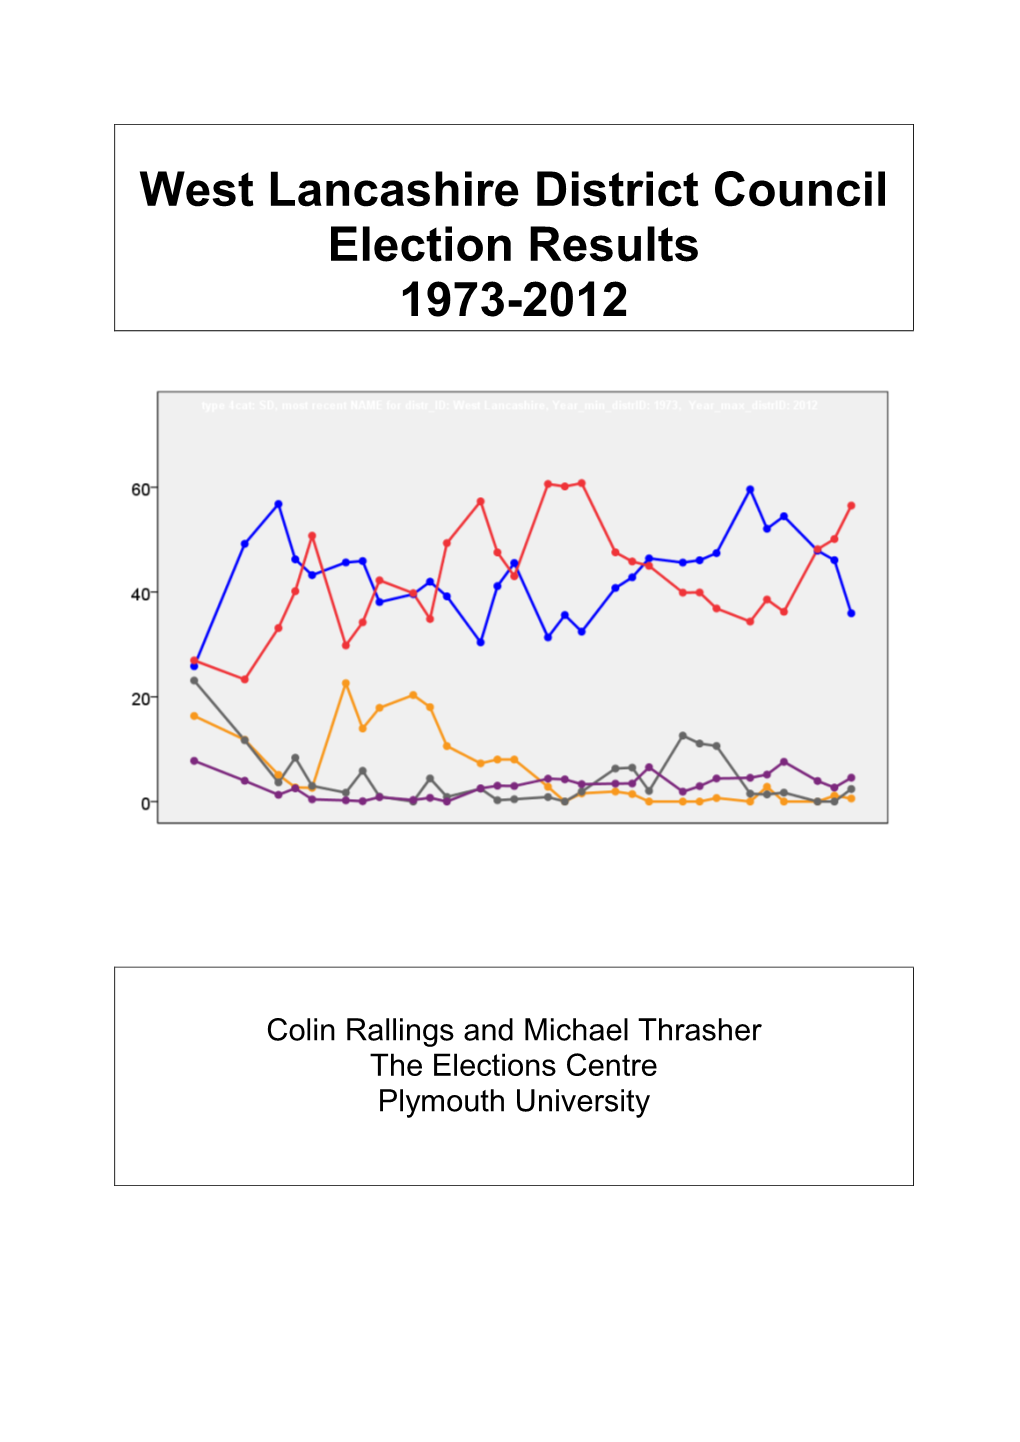 West Lancashire District Council Election Results 1973-2012